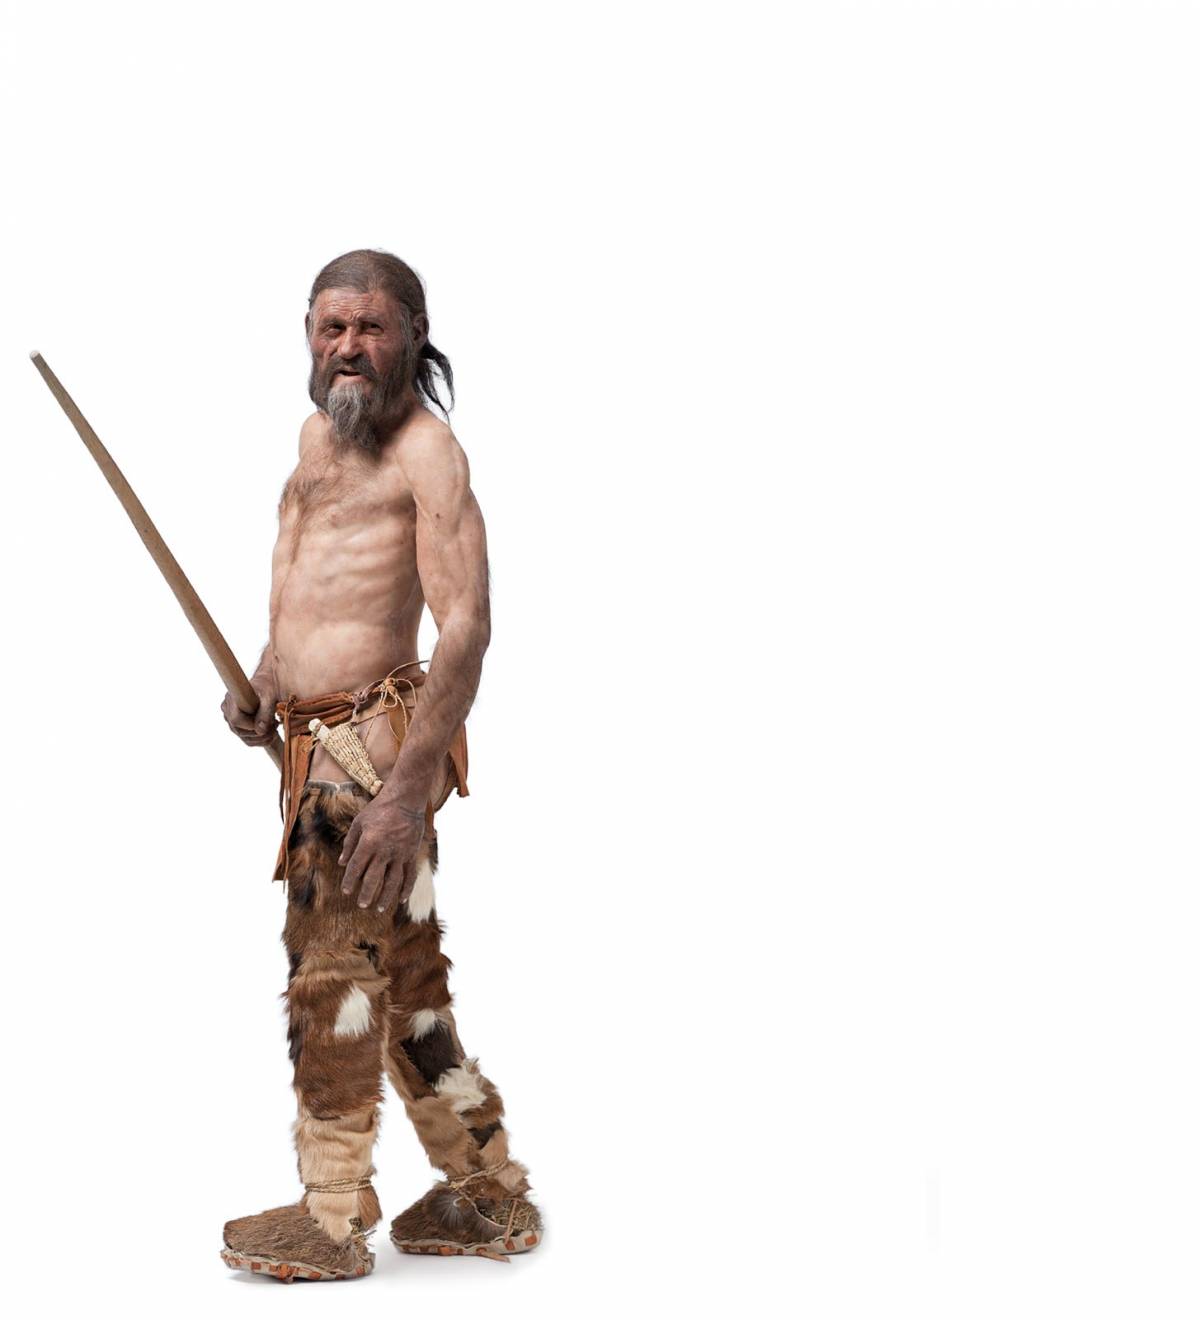 Era sardo, anzi no: ecco da dove proviene Ötzi